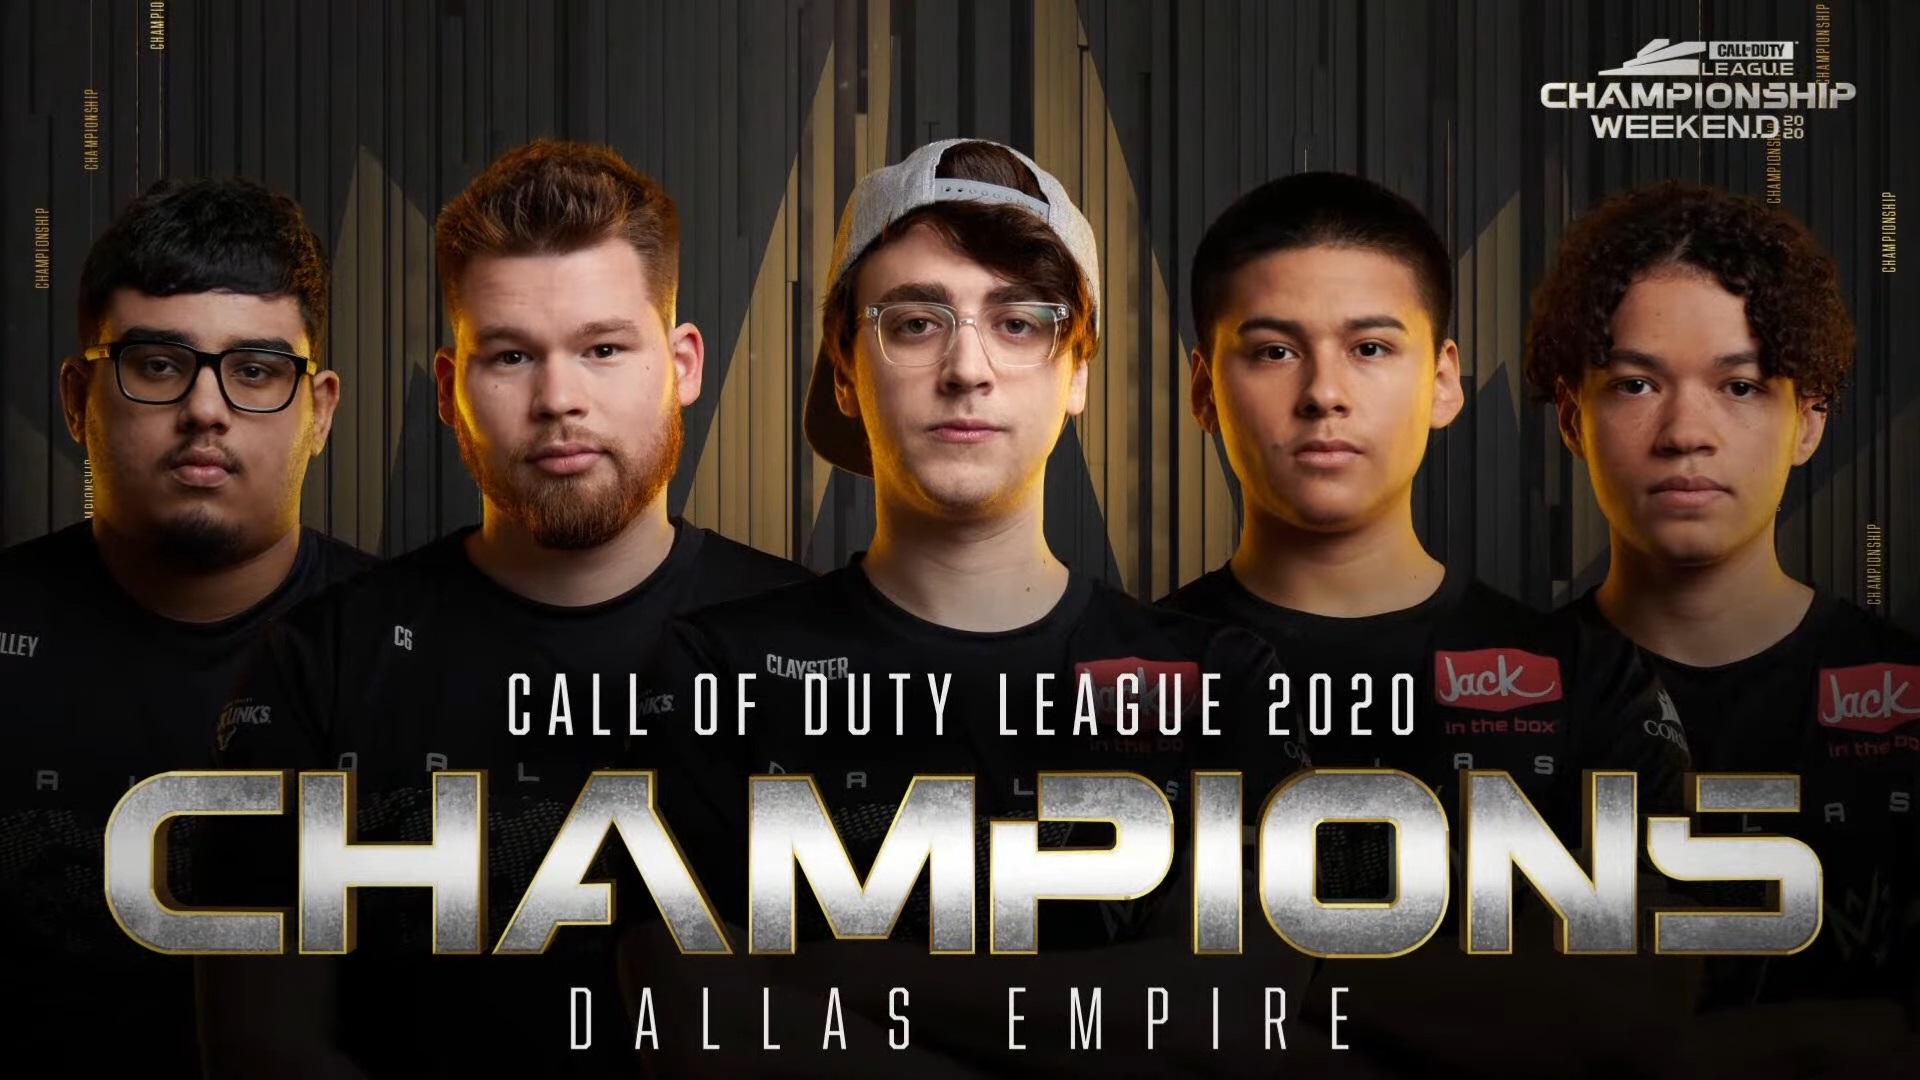 Dallas Empire winning Champs